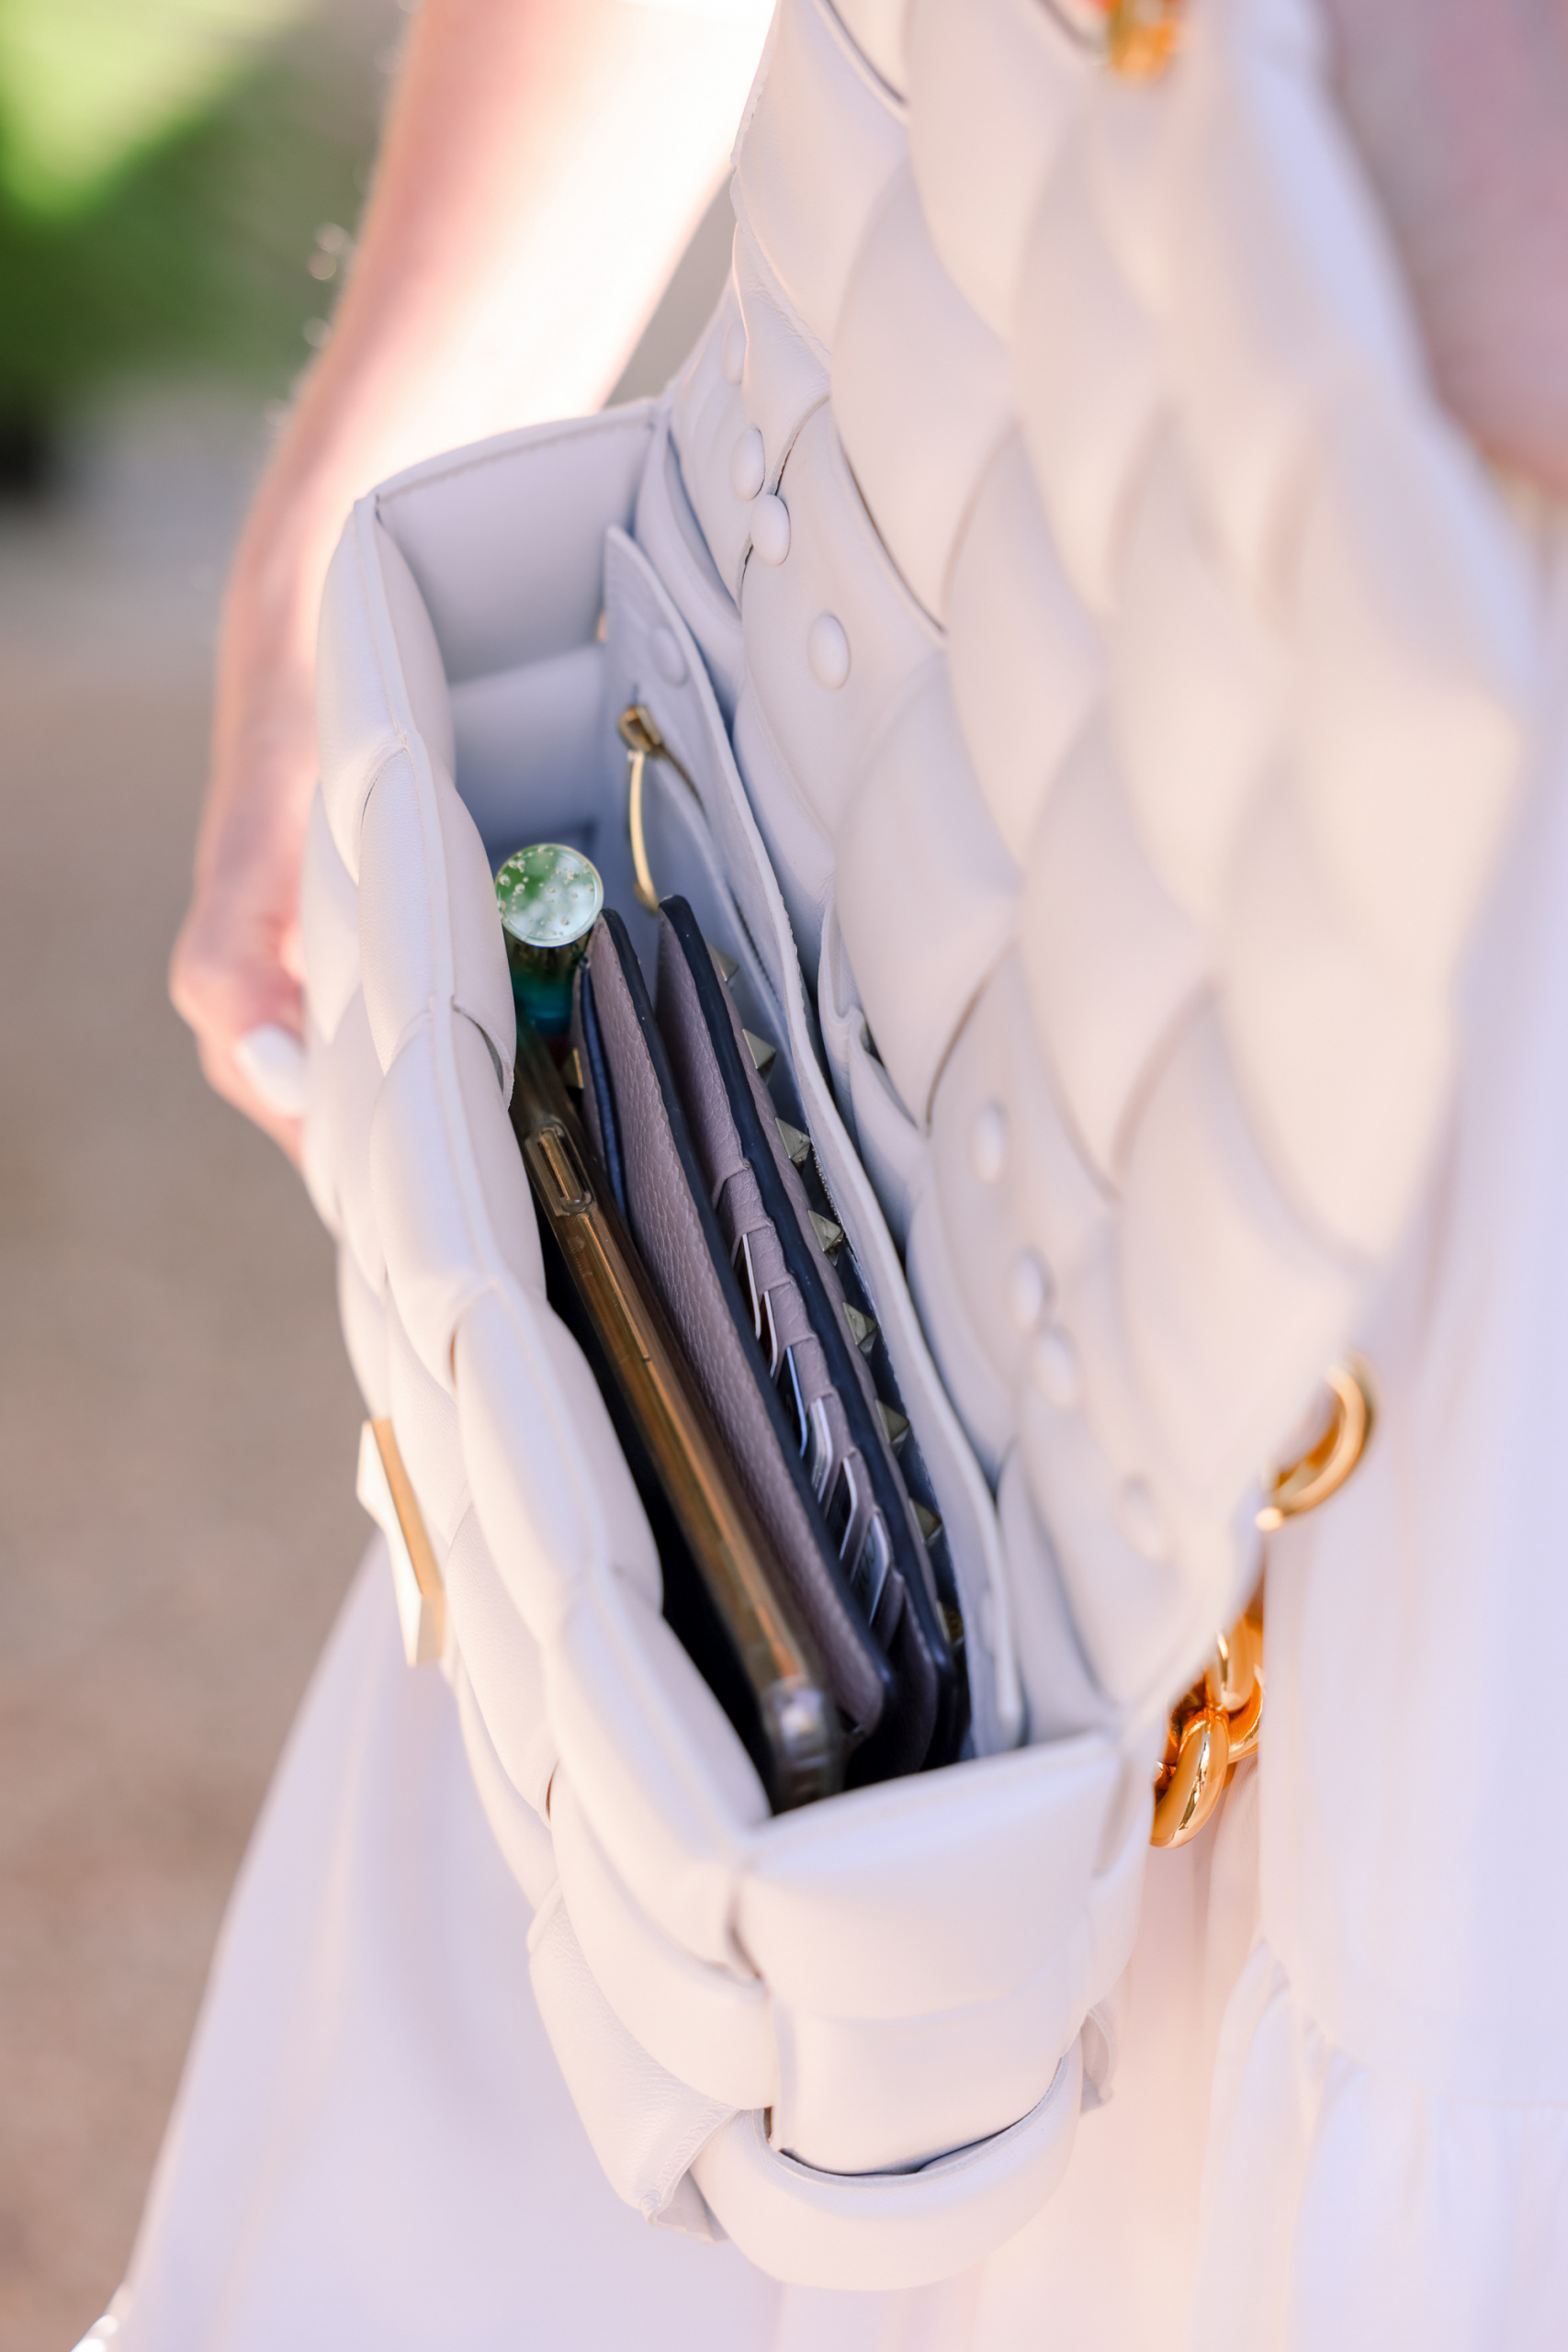 Honest review of Bottega Veneta Cassette Bag in White on fashion blogger over 40 Erin Busbee 